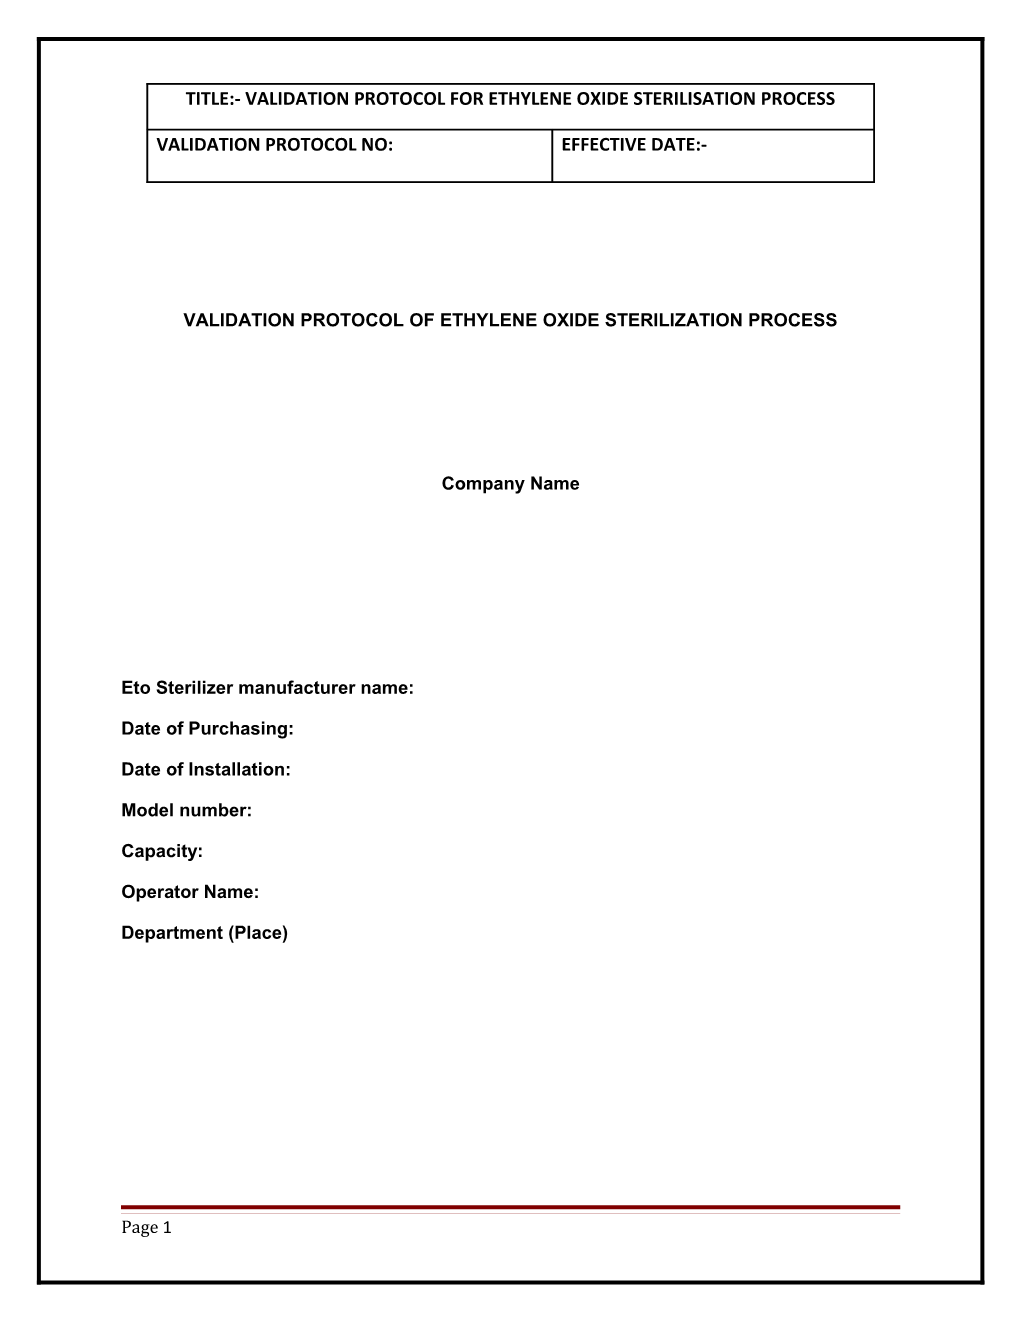 Validation Protocol of Ethylene Oxide Sterilization Process